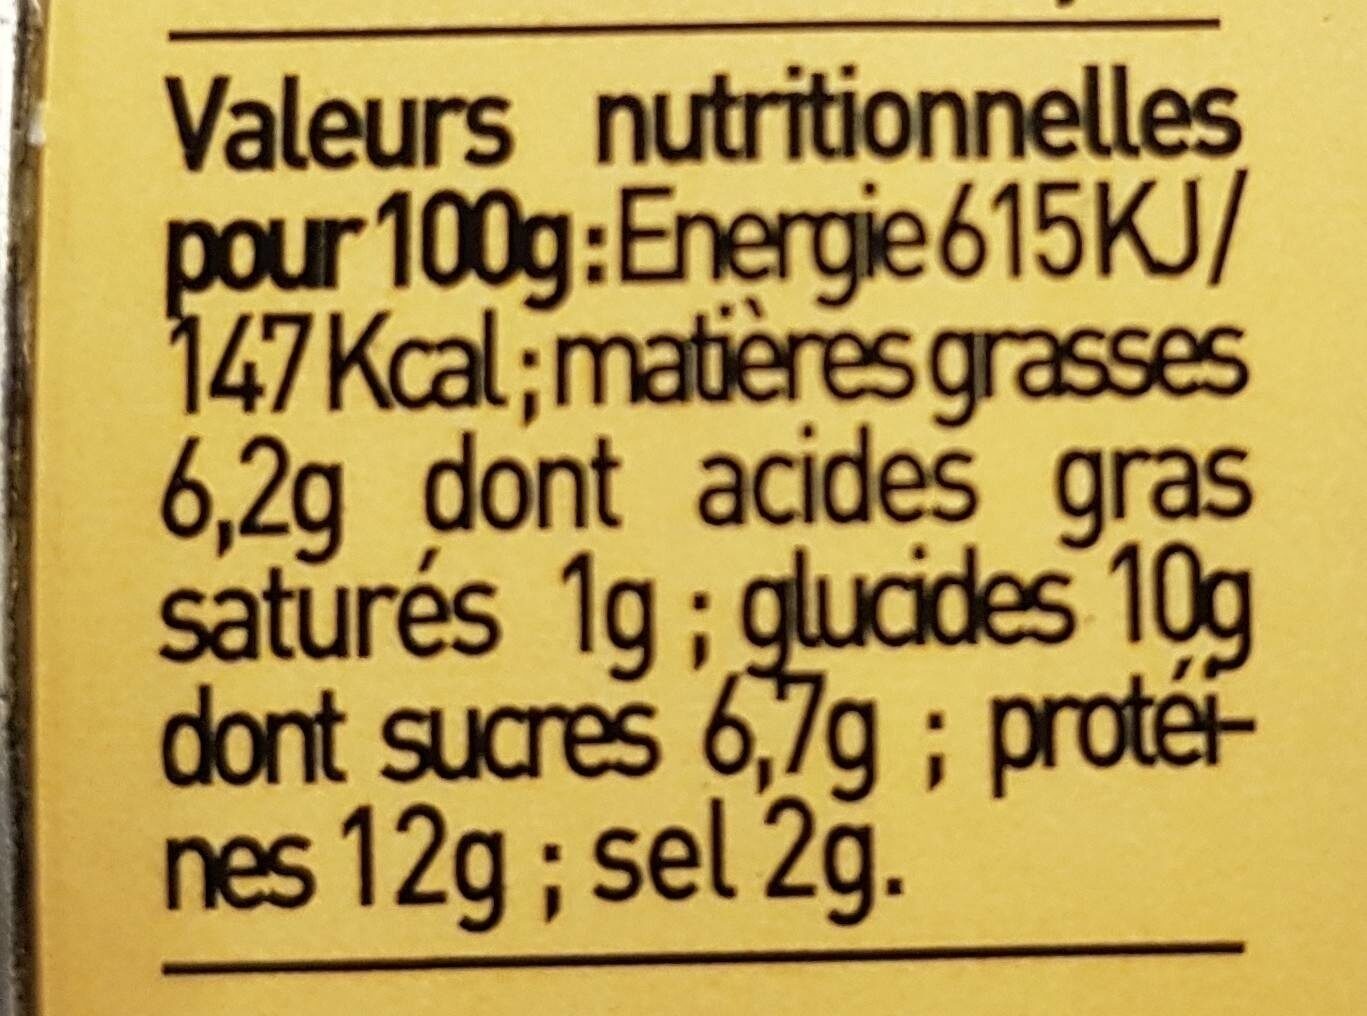 P'tits bulots poivrons grilles et limon - Nutrition facts - fr